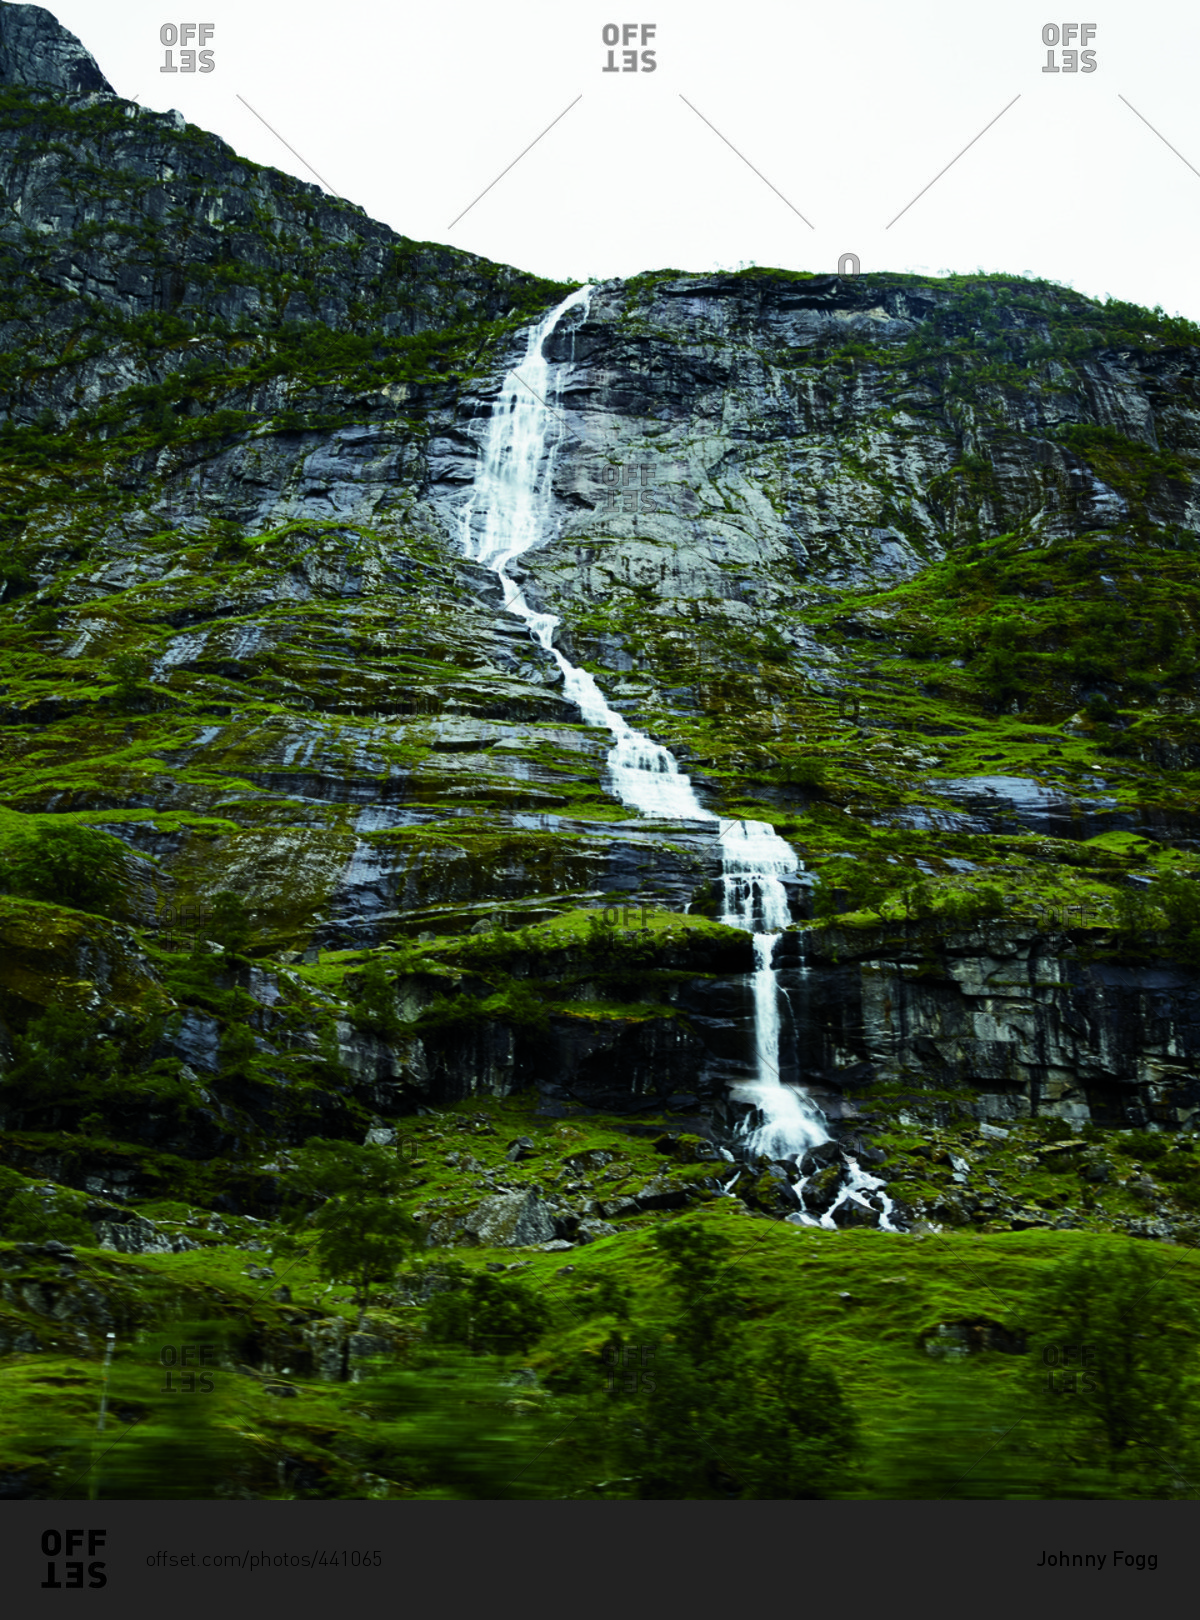 Waterfall along a mossy mountainside